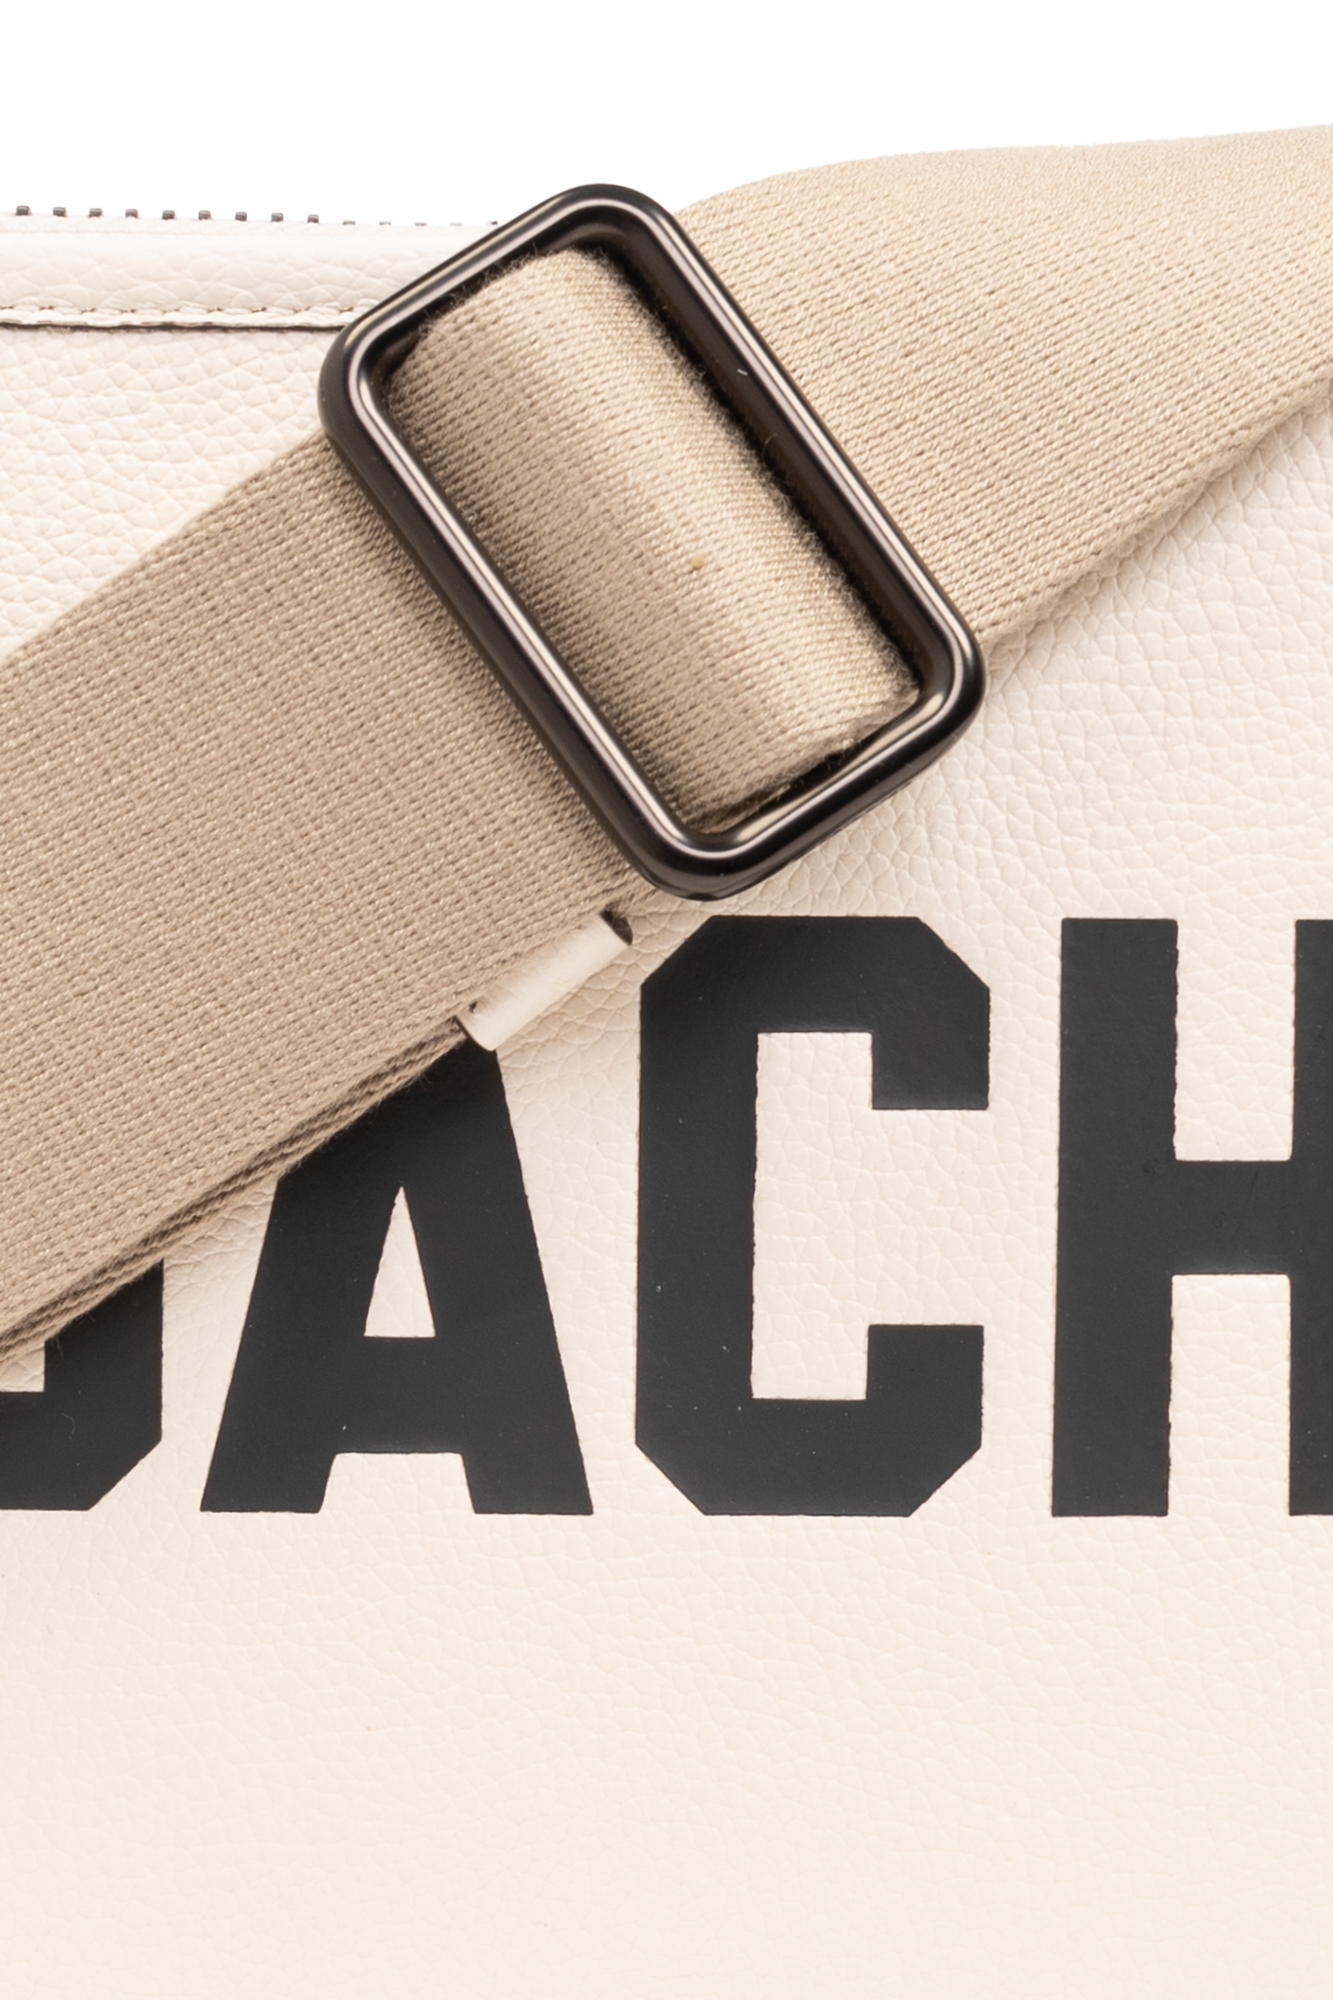 Coach ‘Charter 24’ shoulder bag